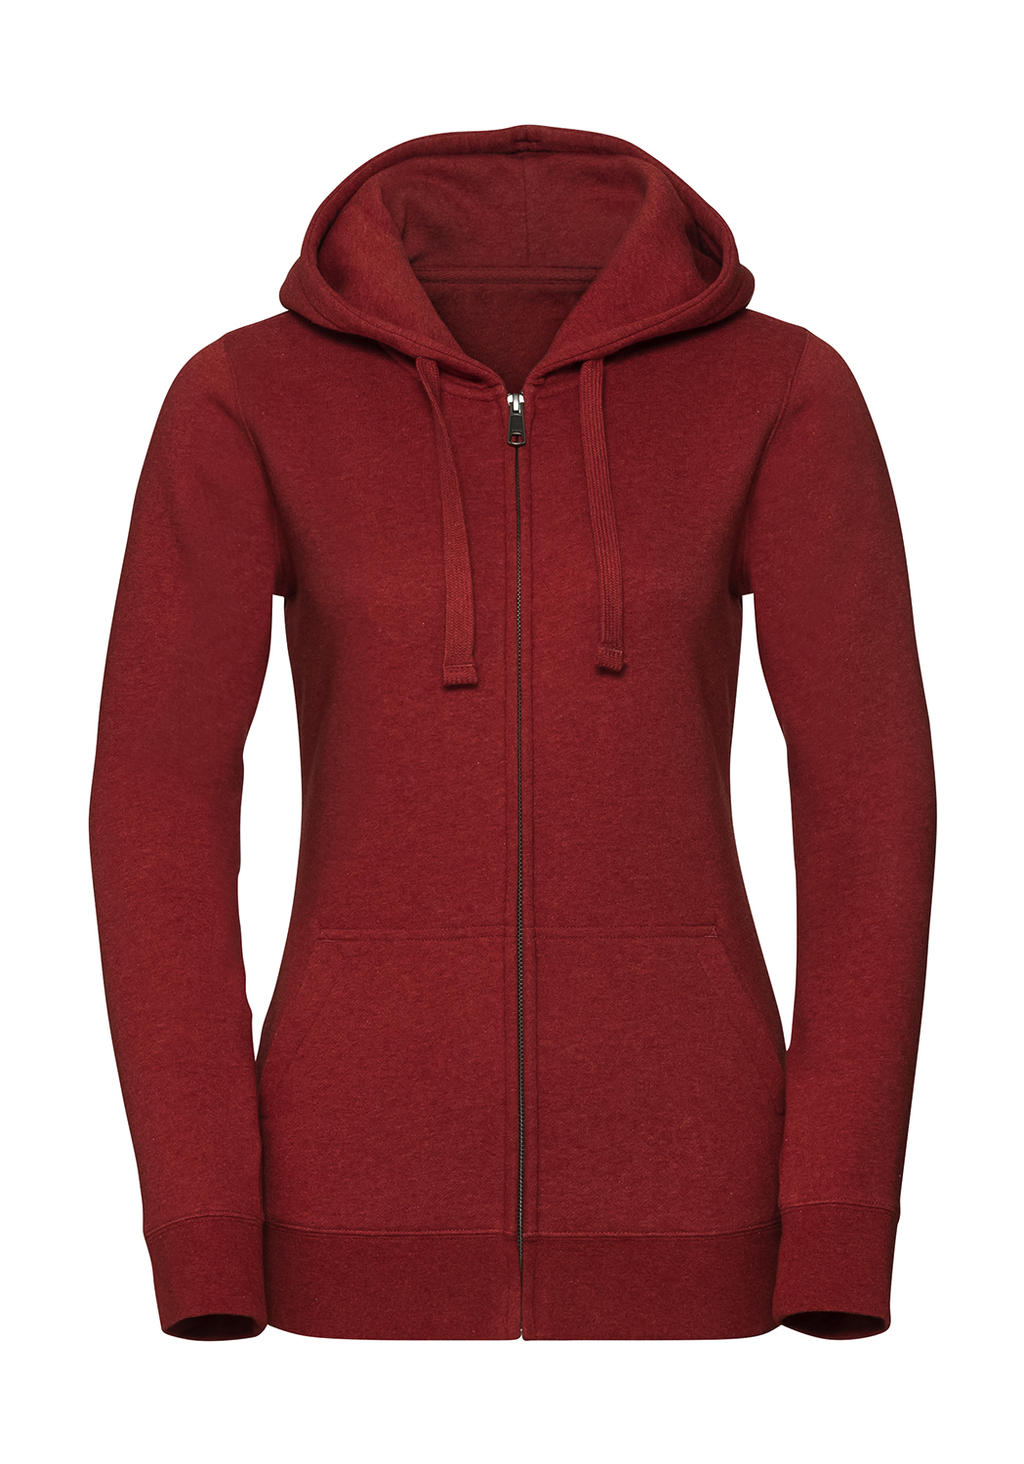  Ladies Authentic Melange Zipped Hood Sweat in Farbe Brick Red Melange